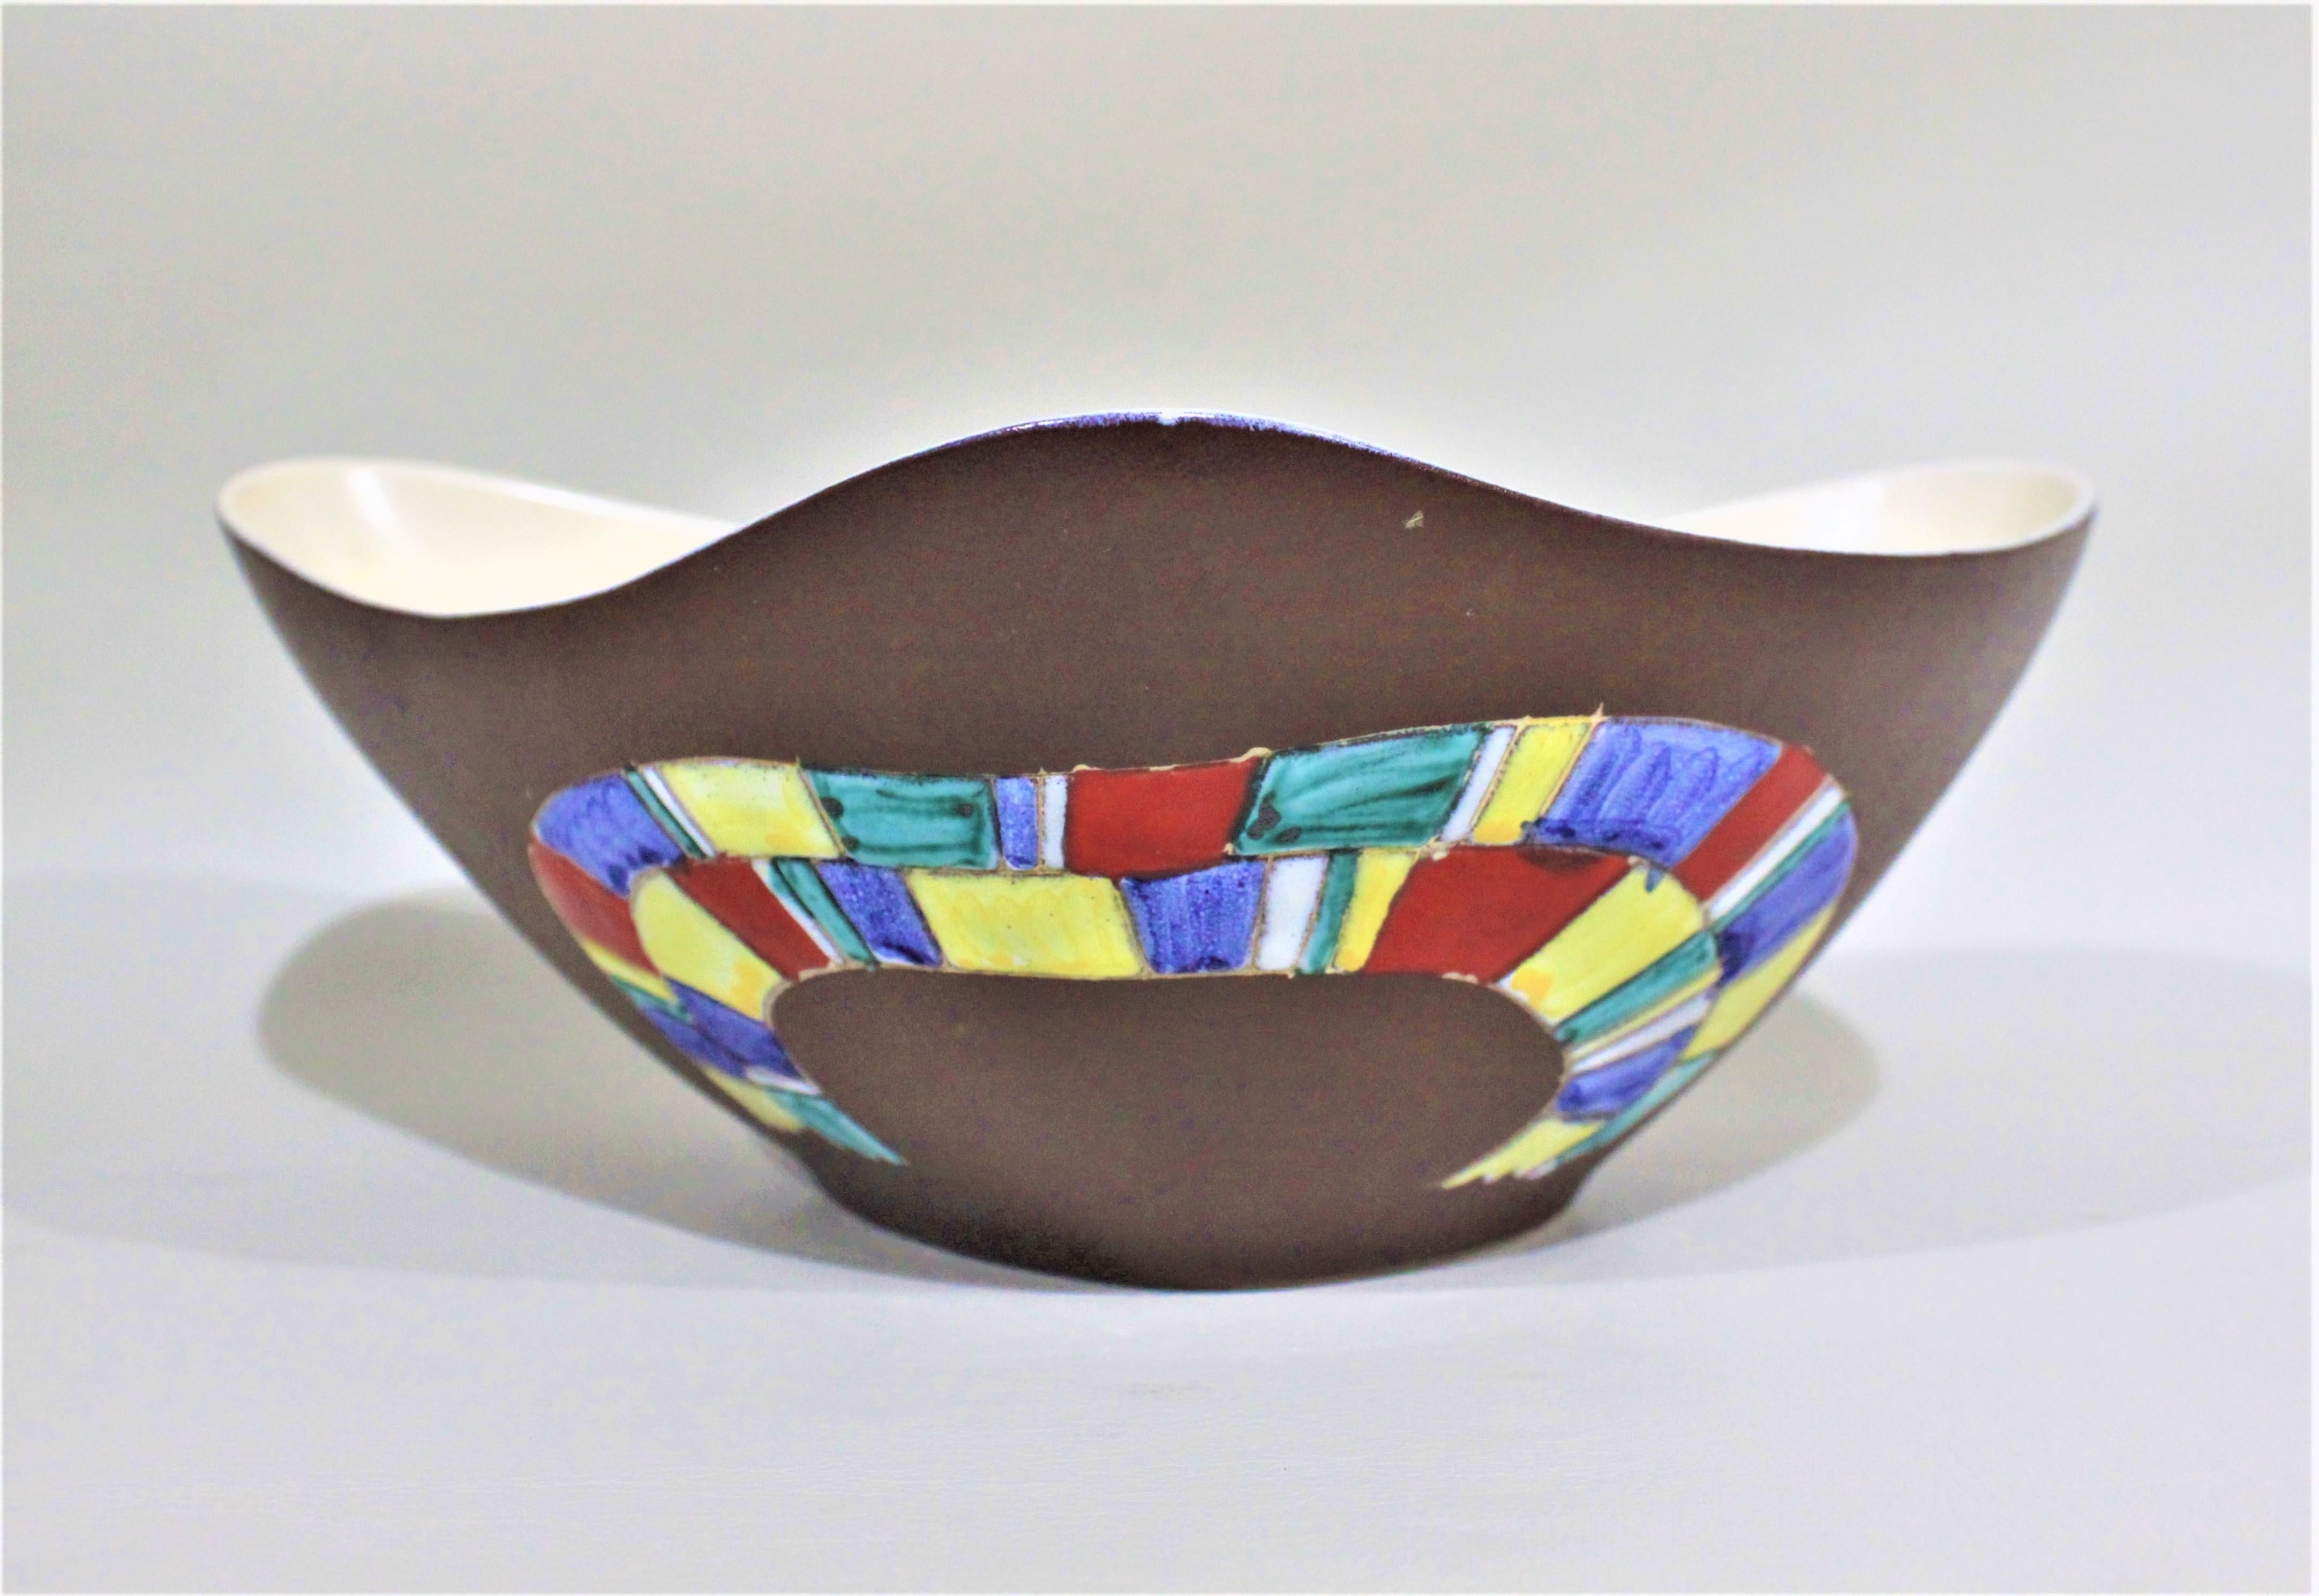 Diese Mid-Century Modern Art Pottery Schale wurde etwa 1965 von Hand Decor aus British Columbia, Kanada, hergestellt und von Herta Gerz entworfen. Die Schale hat eine eher dreieckige Form mit abgerundeten Ecken und schwungvollen Kurven zwischen den